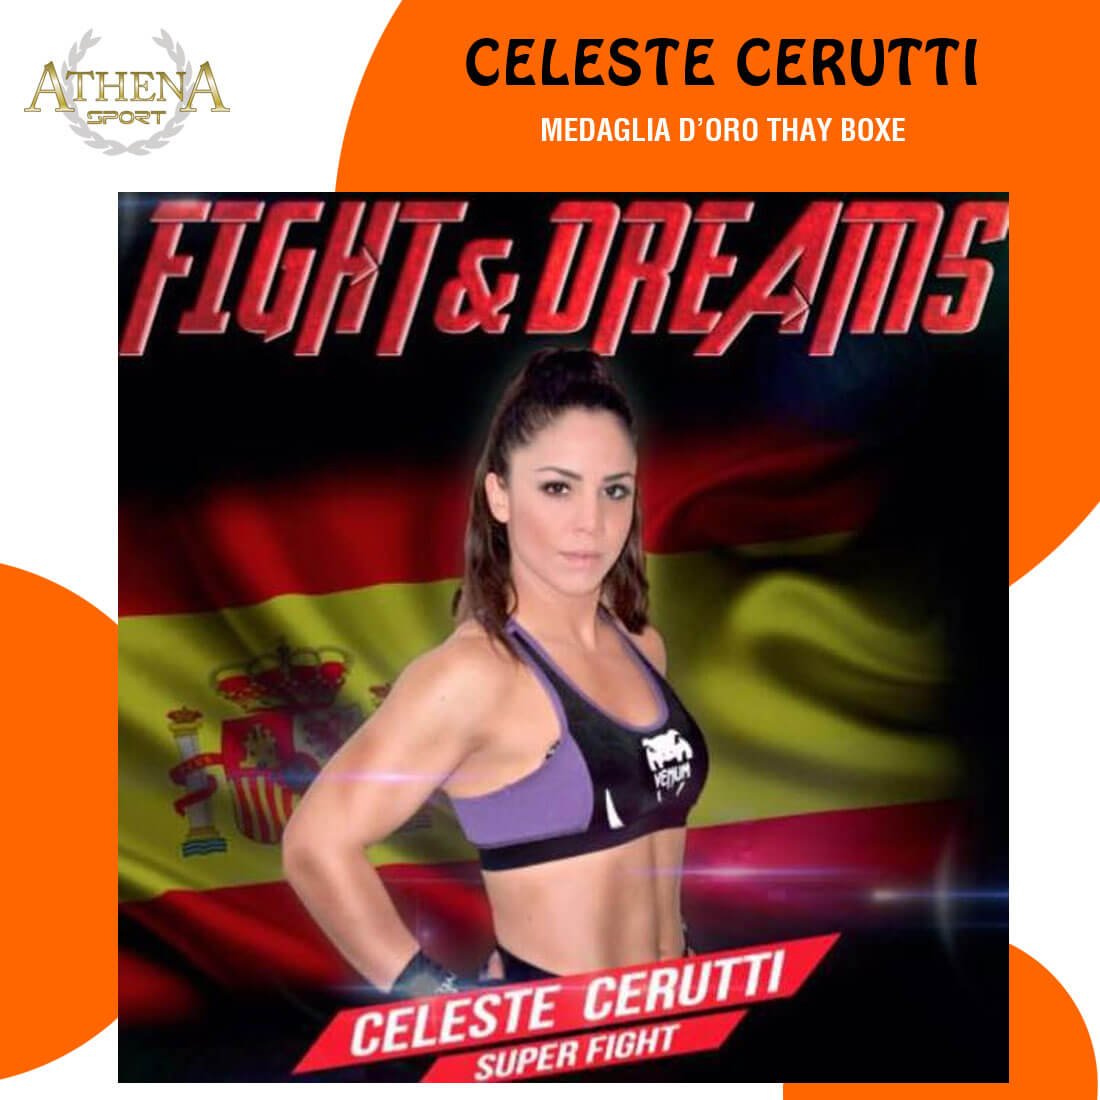 Celeste Cerutti testimonial Athena Sport Torino